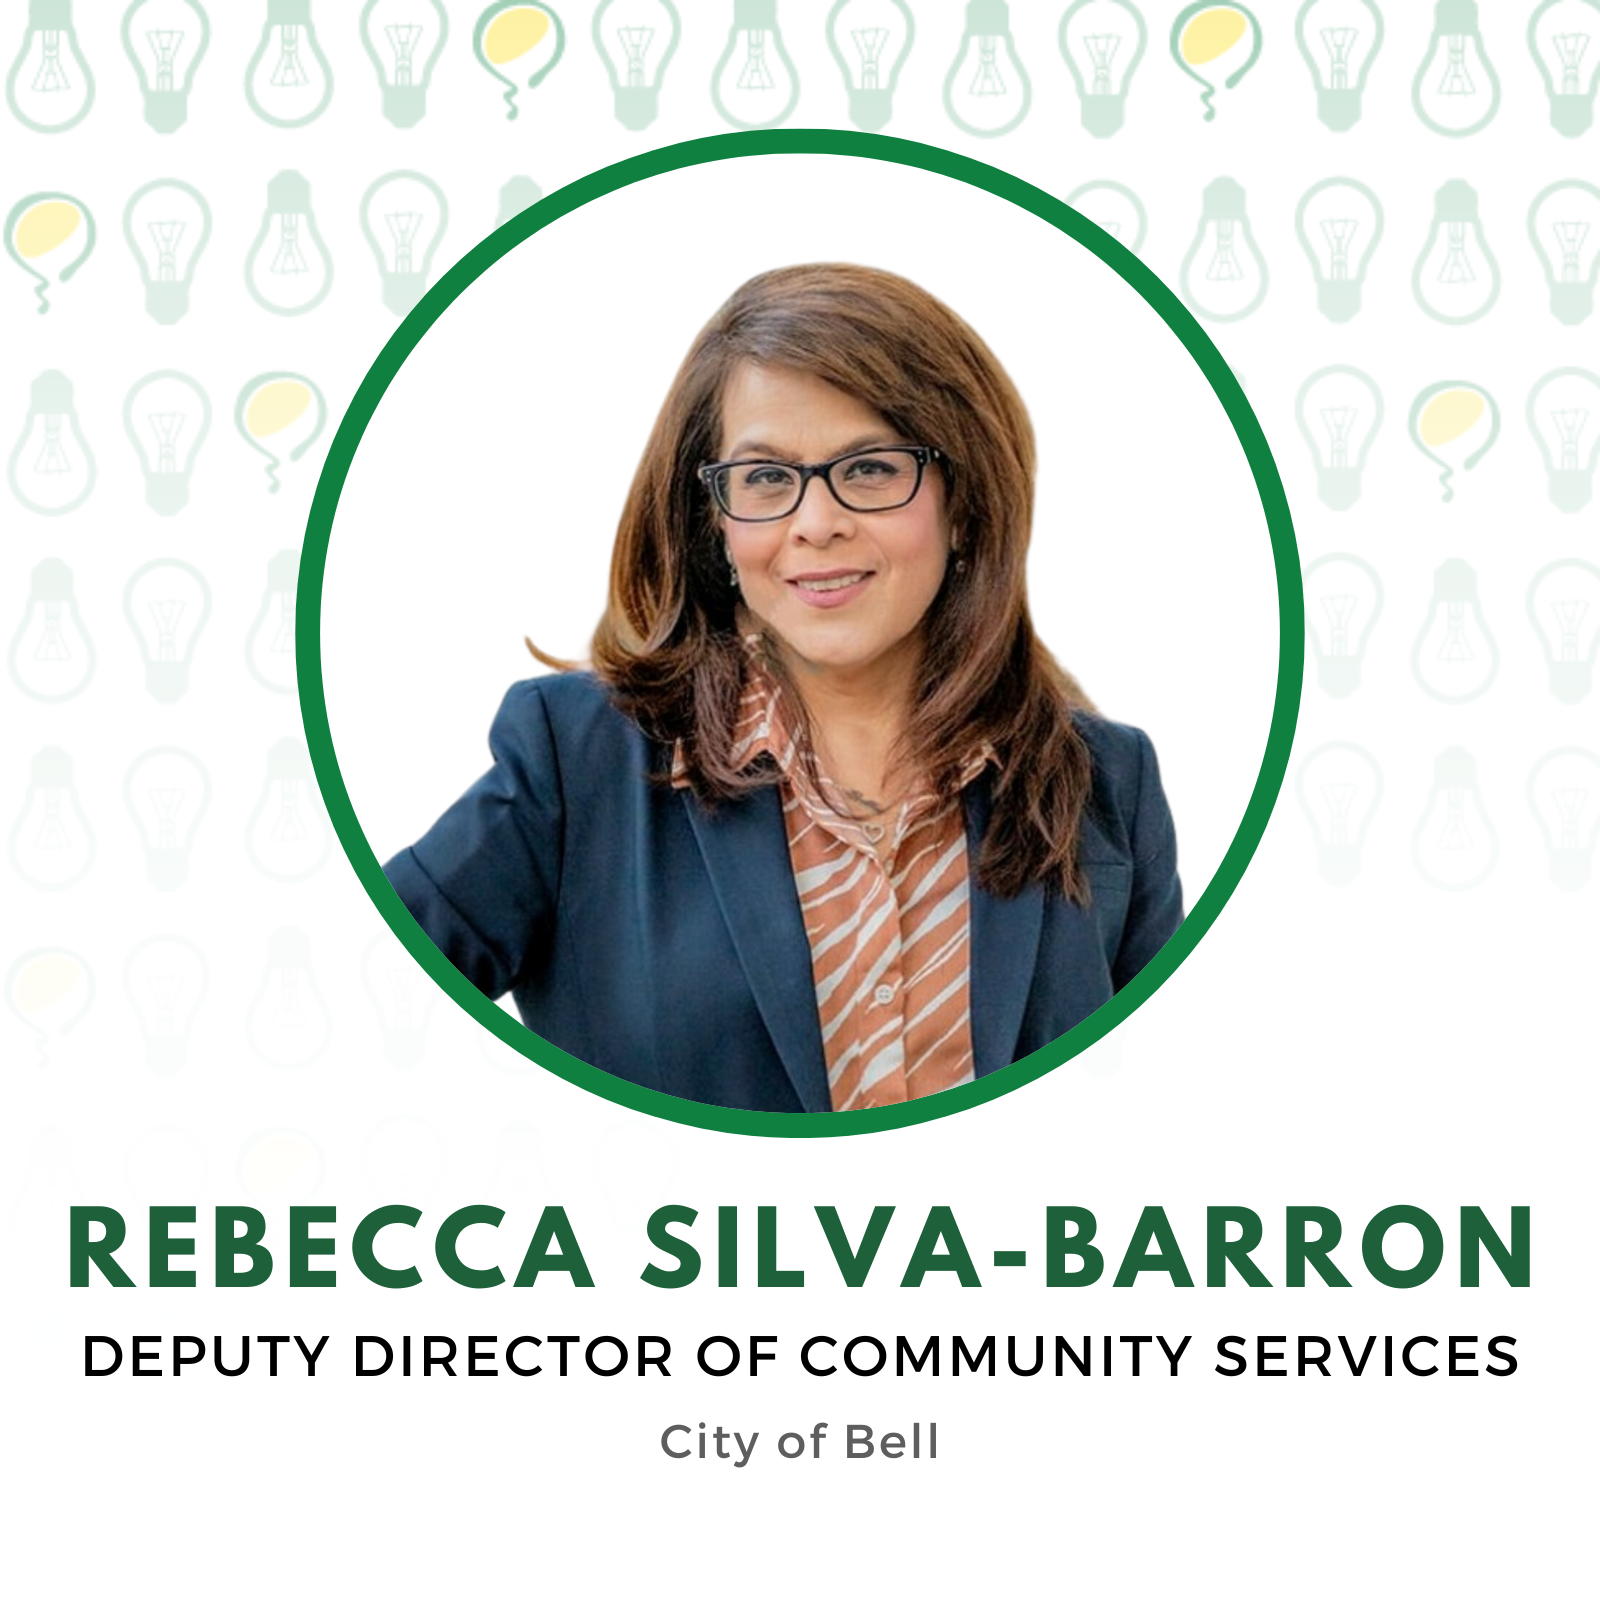 Rebecca Silva-Barron